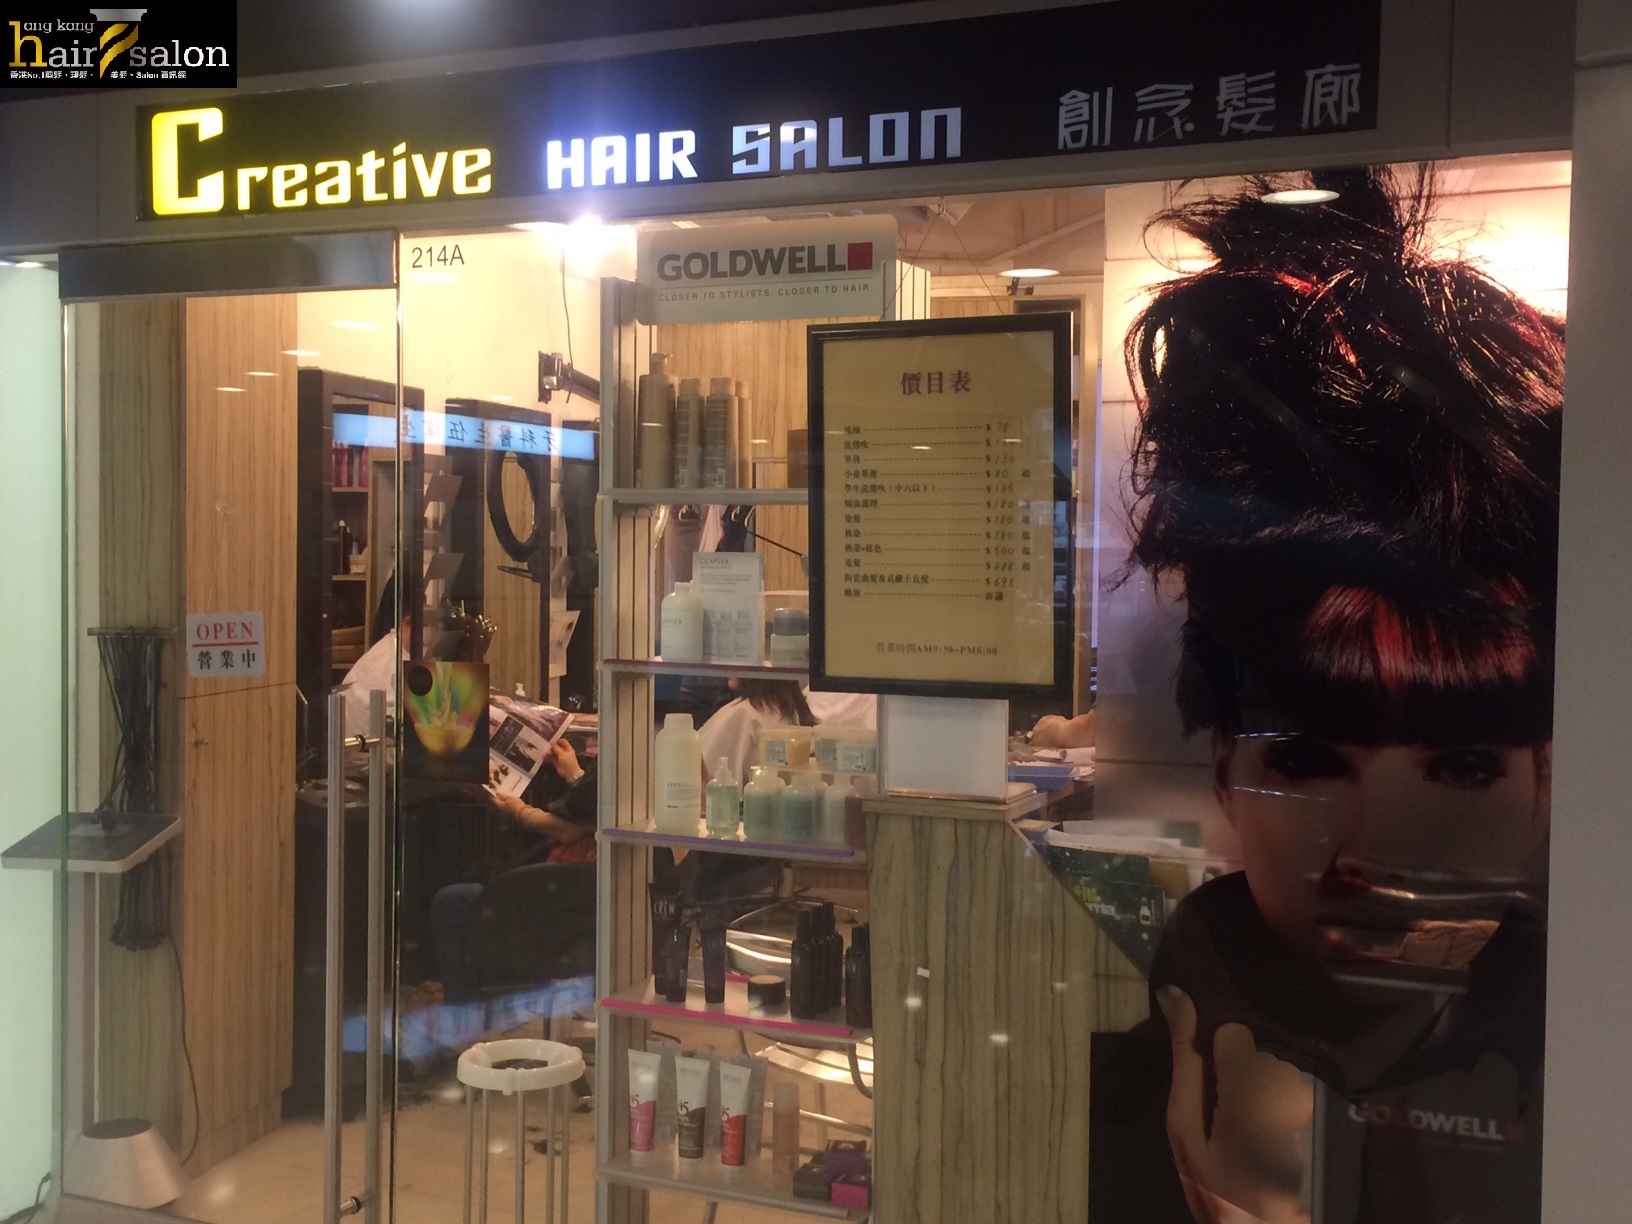 染髮: Creative Hair Salon 創念髮廊